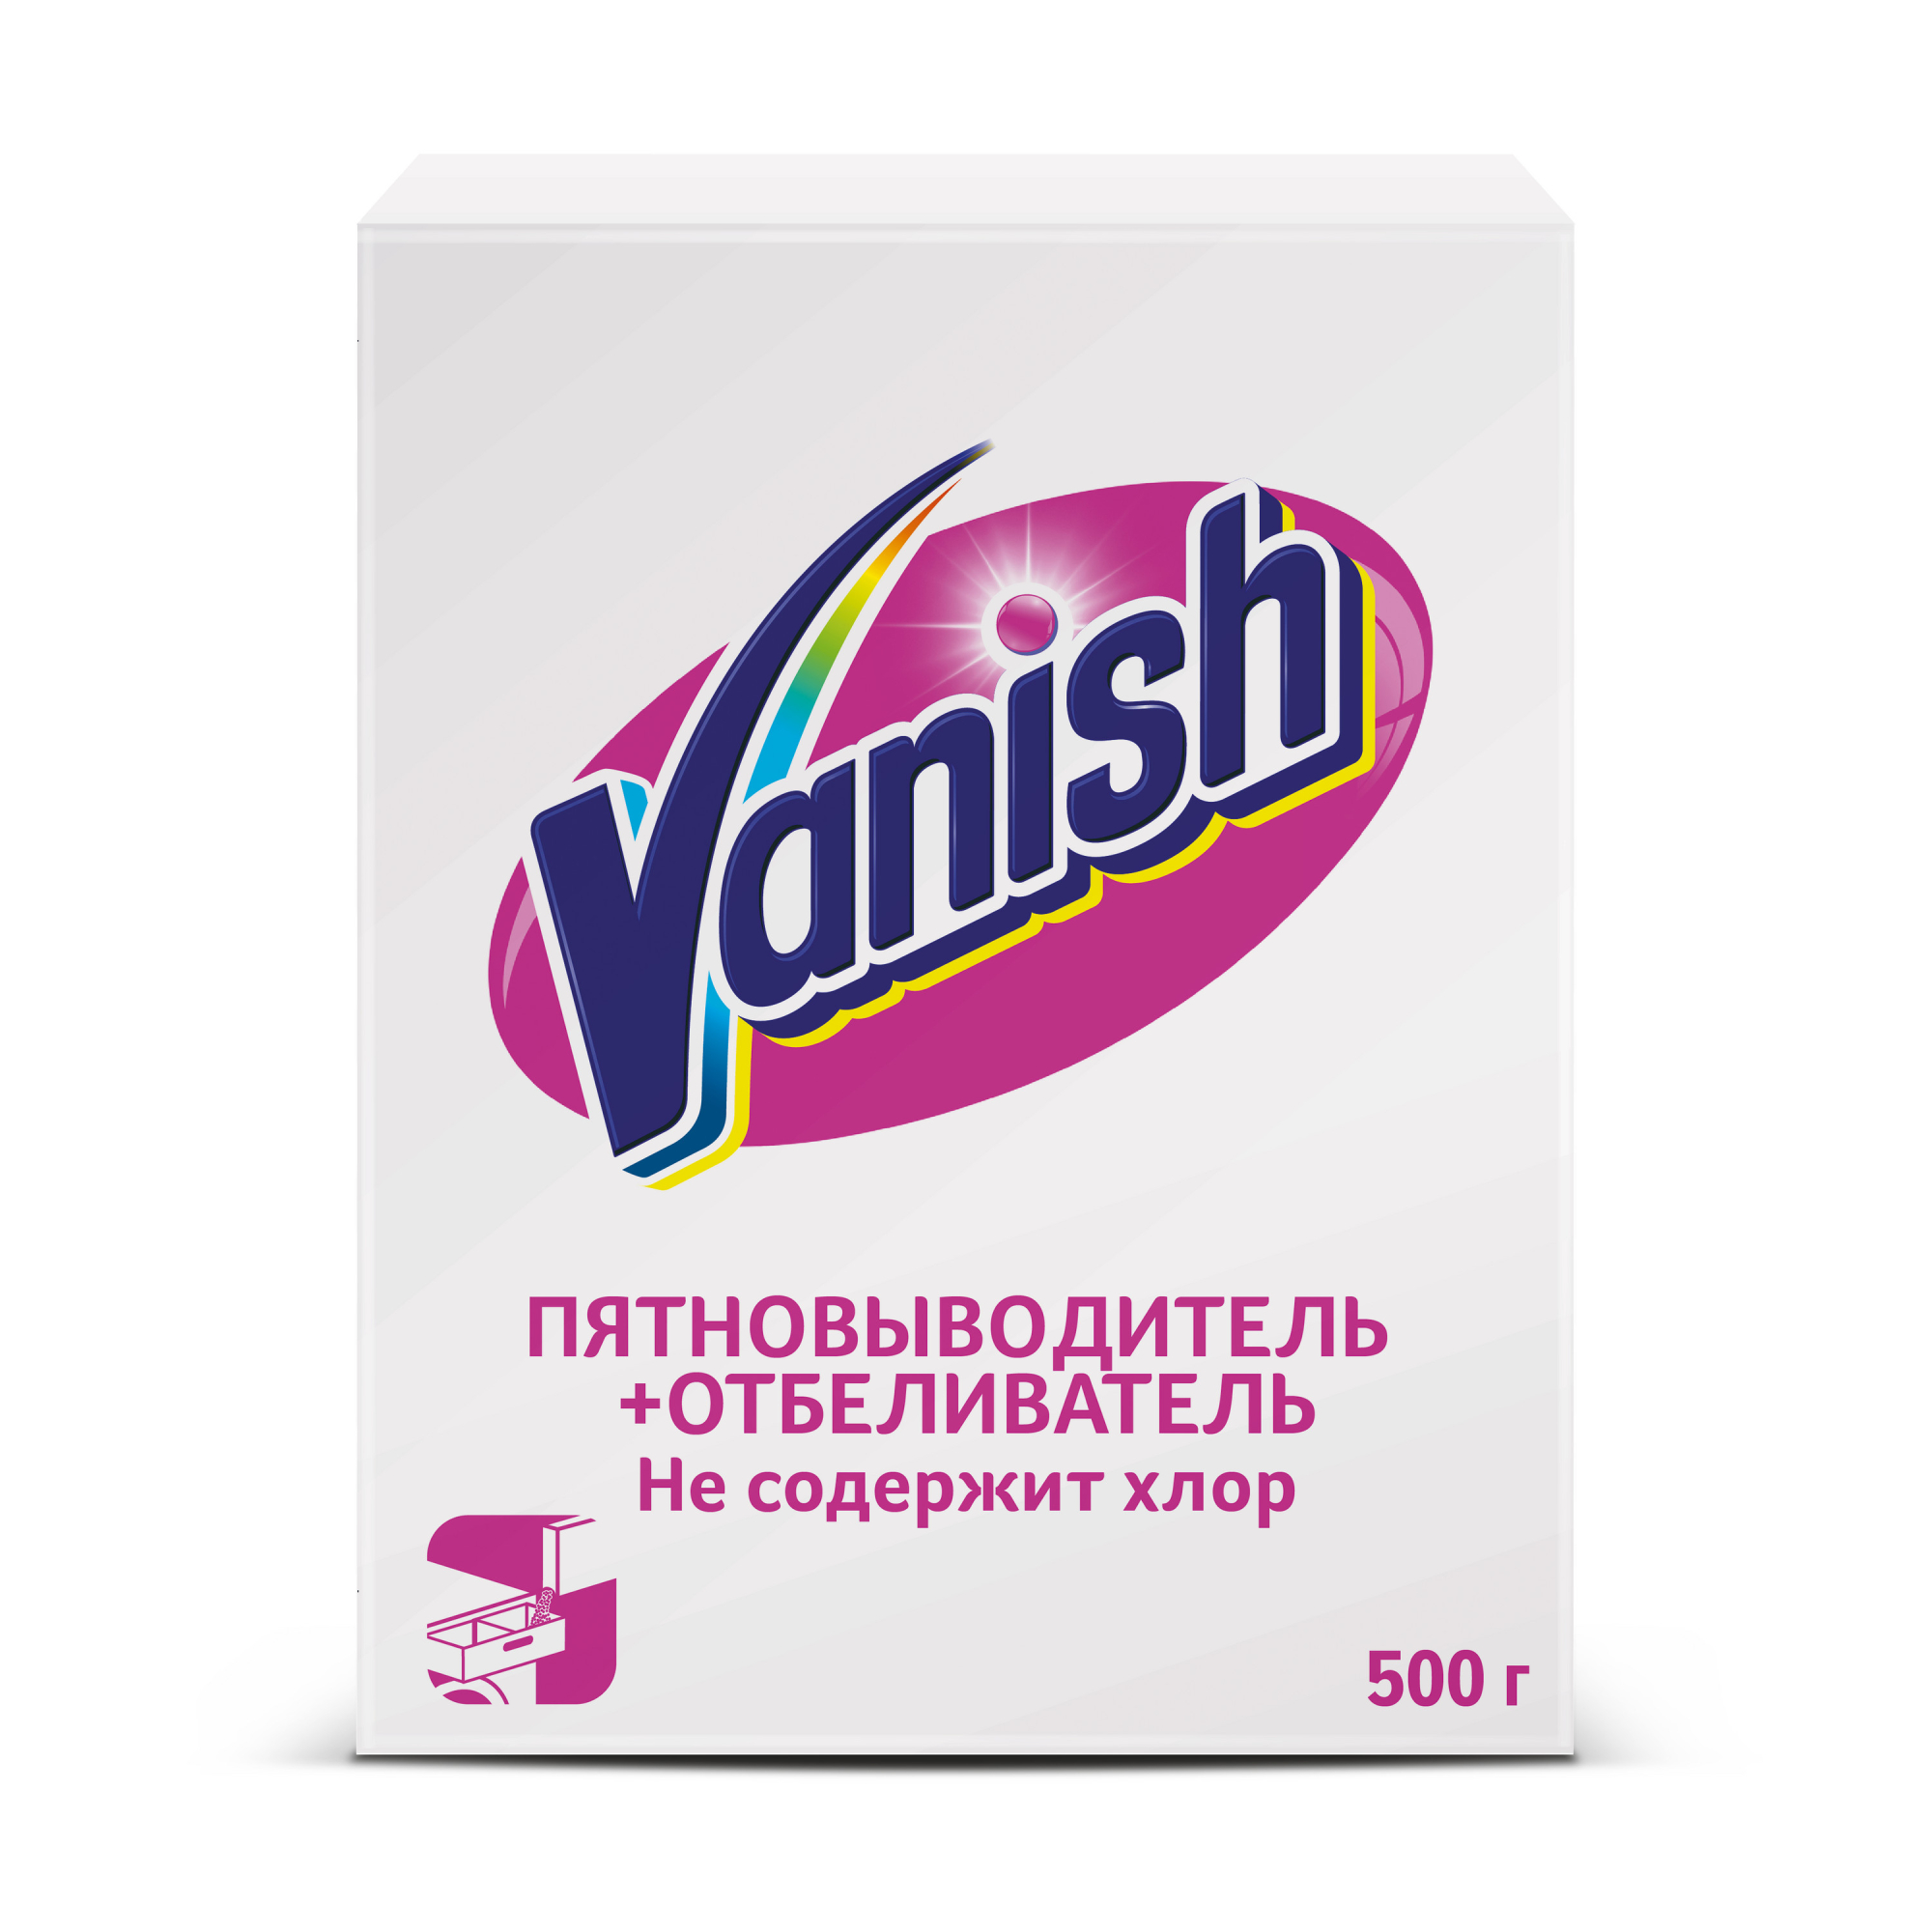 Пятновыводитель Vanish отбеливатель 500 гр - фото 1